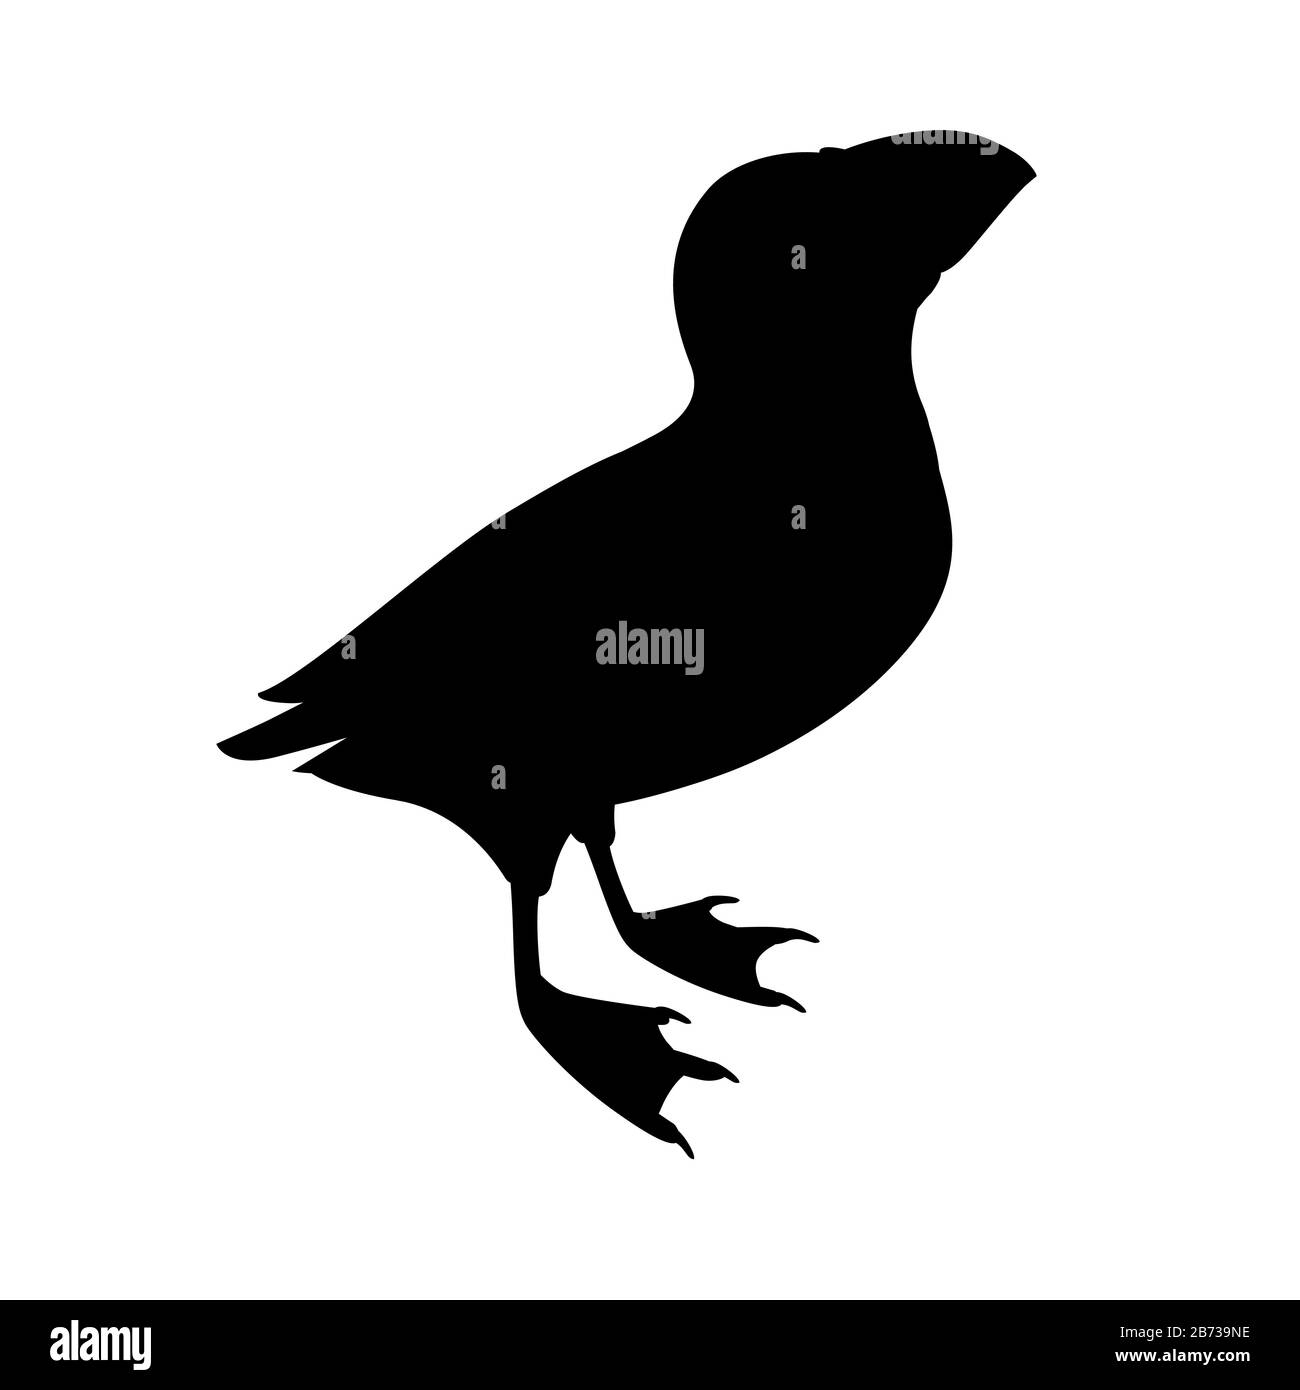 Silhouette noire oiseau de macareux de l'atlantique regard sur le dessus dessin d'animal de caricature illustration vectorielle plate isolée sur fond blanc. Illustration de Vecteur